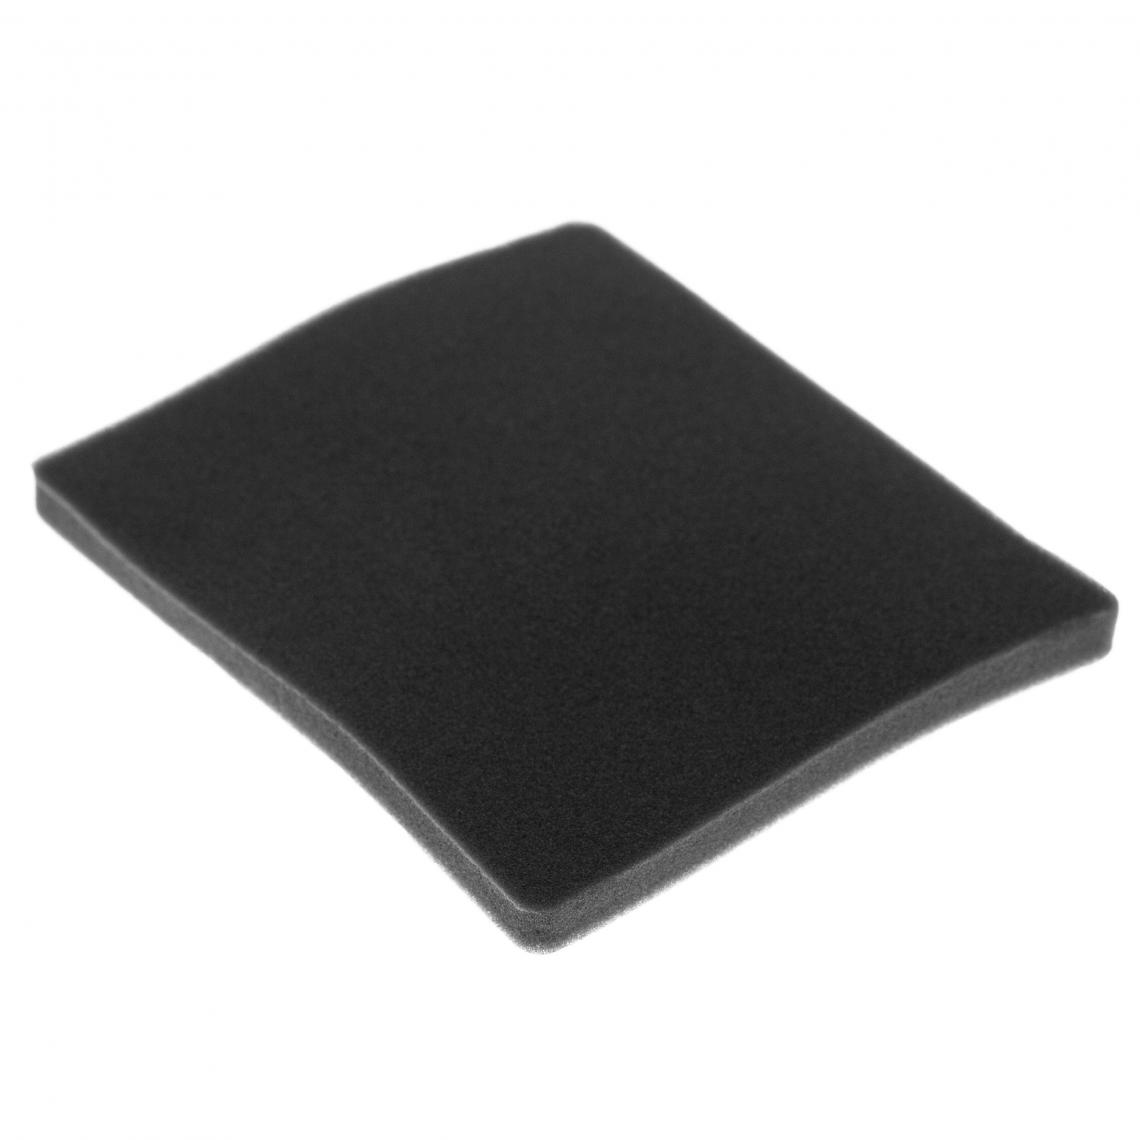 Vhbw - vhbw Filtre compatible avec Electrolux ZAMG6200 (903151207) aspirateur - filtre de sortie d'air (filtre éponge), noir - Accessoire entretien des sols